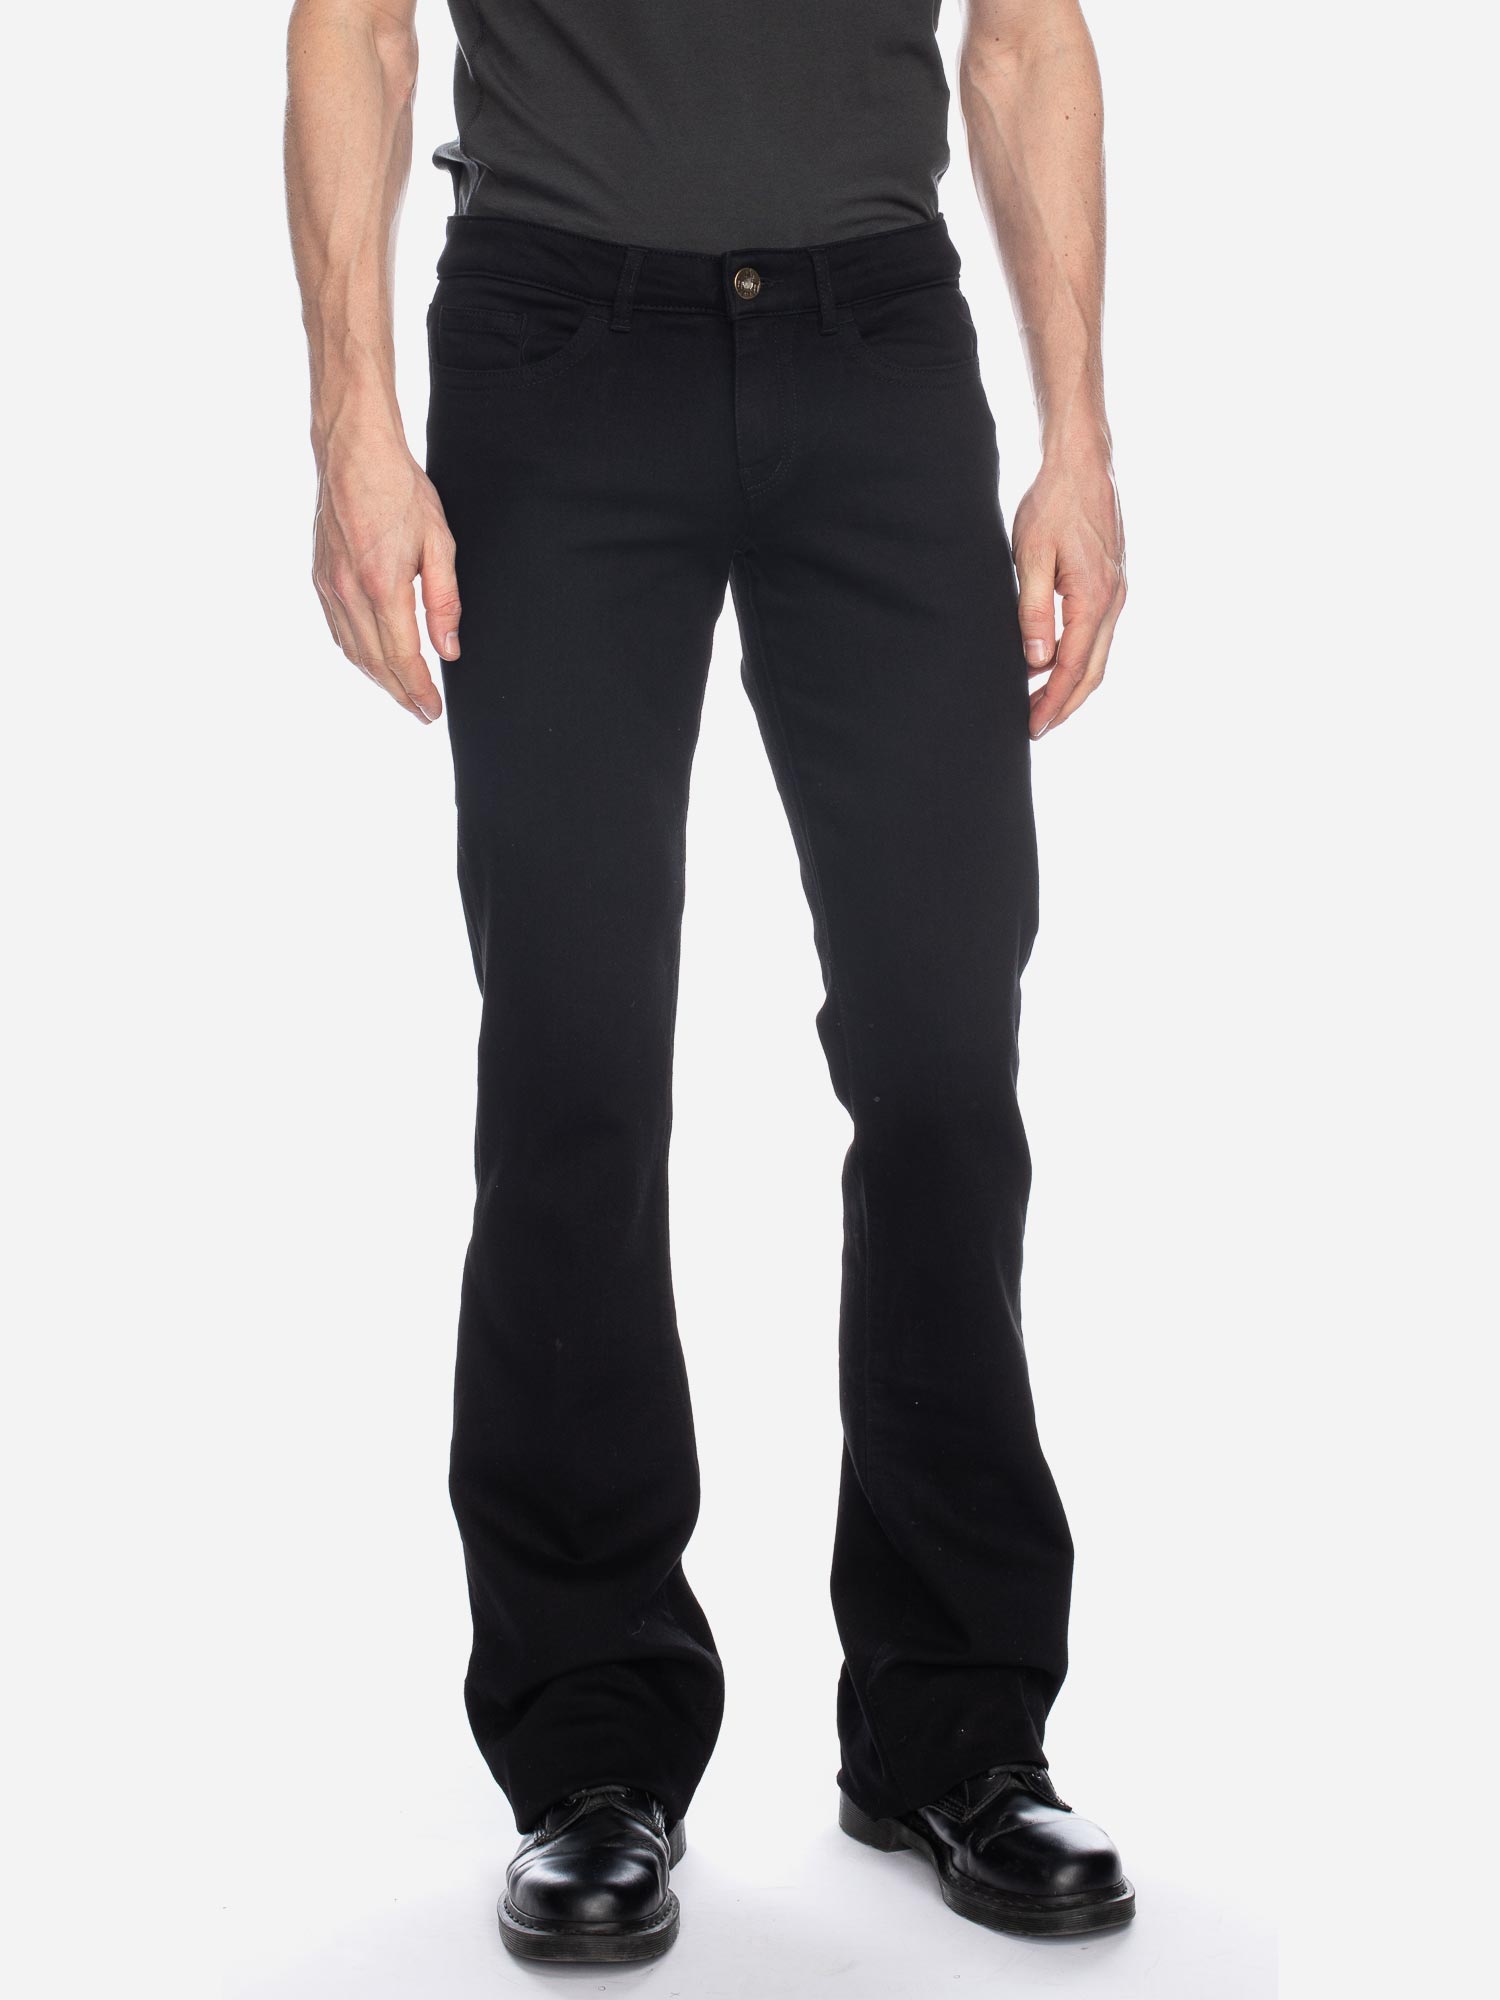 Jeans Fred GOTS COAL BLK Größe: 26 Länge: 30